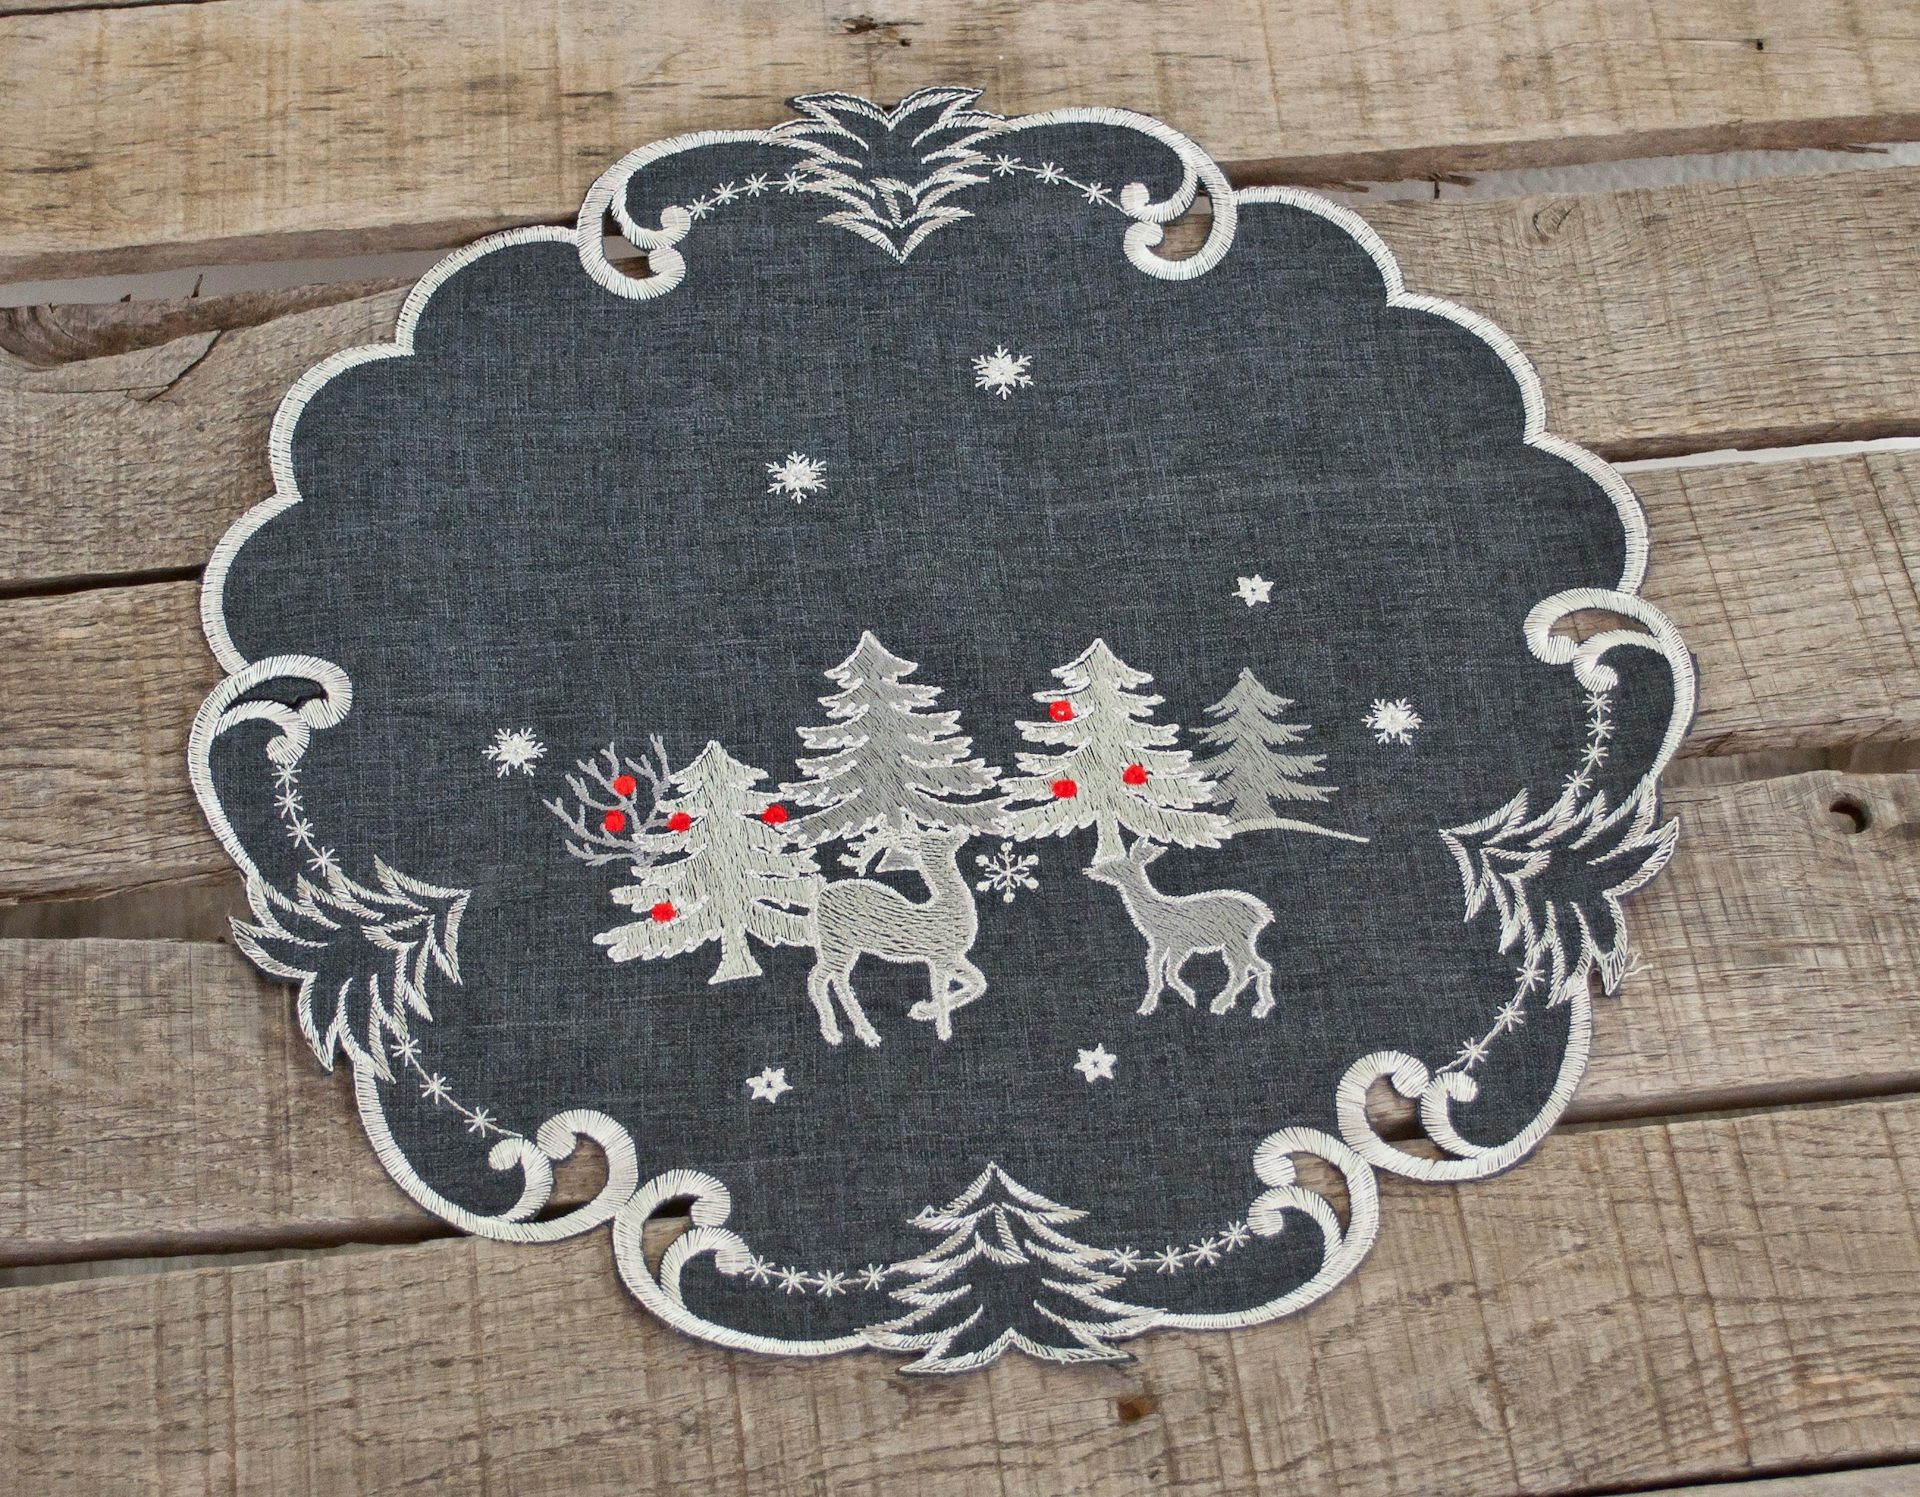 Embroidered Silver Reindeer on Dark Grey Doily (15" Round)